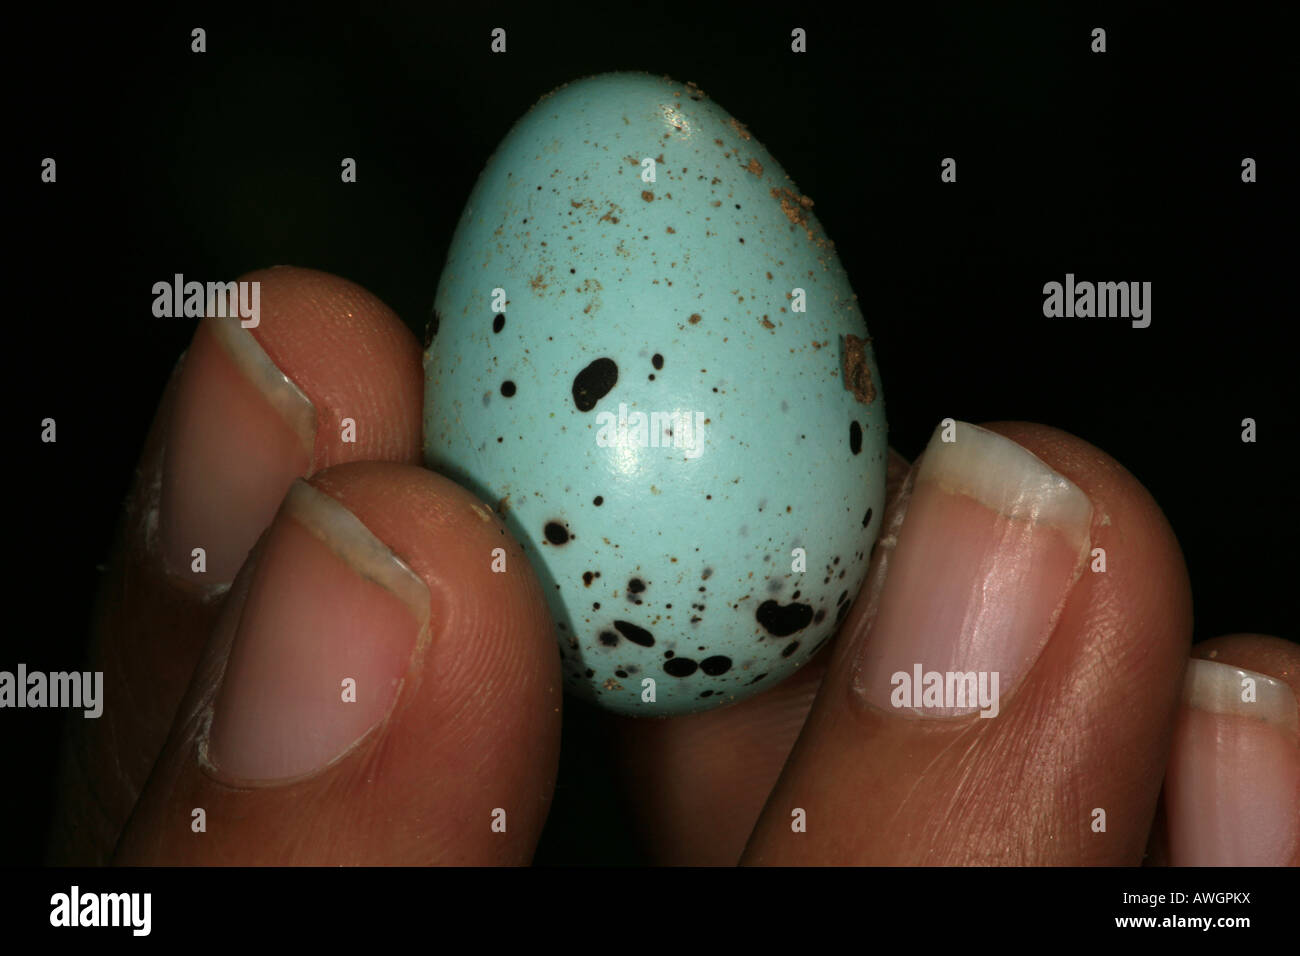 Un œuf d'oiseau, probablement du bleu-gris tangara écarlate, près de Cana field station, Darien national park, province de Darién, République du Panama. Banque D'Images